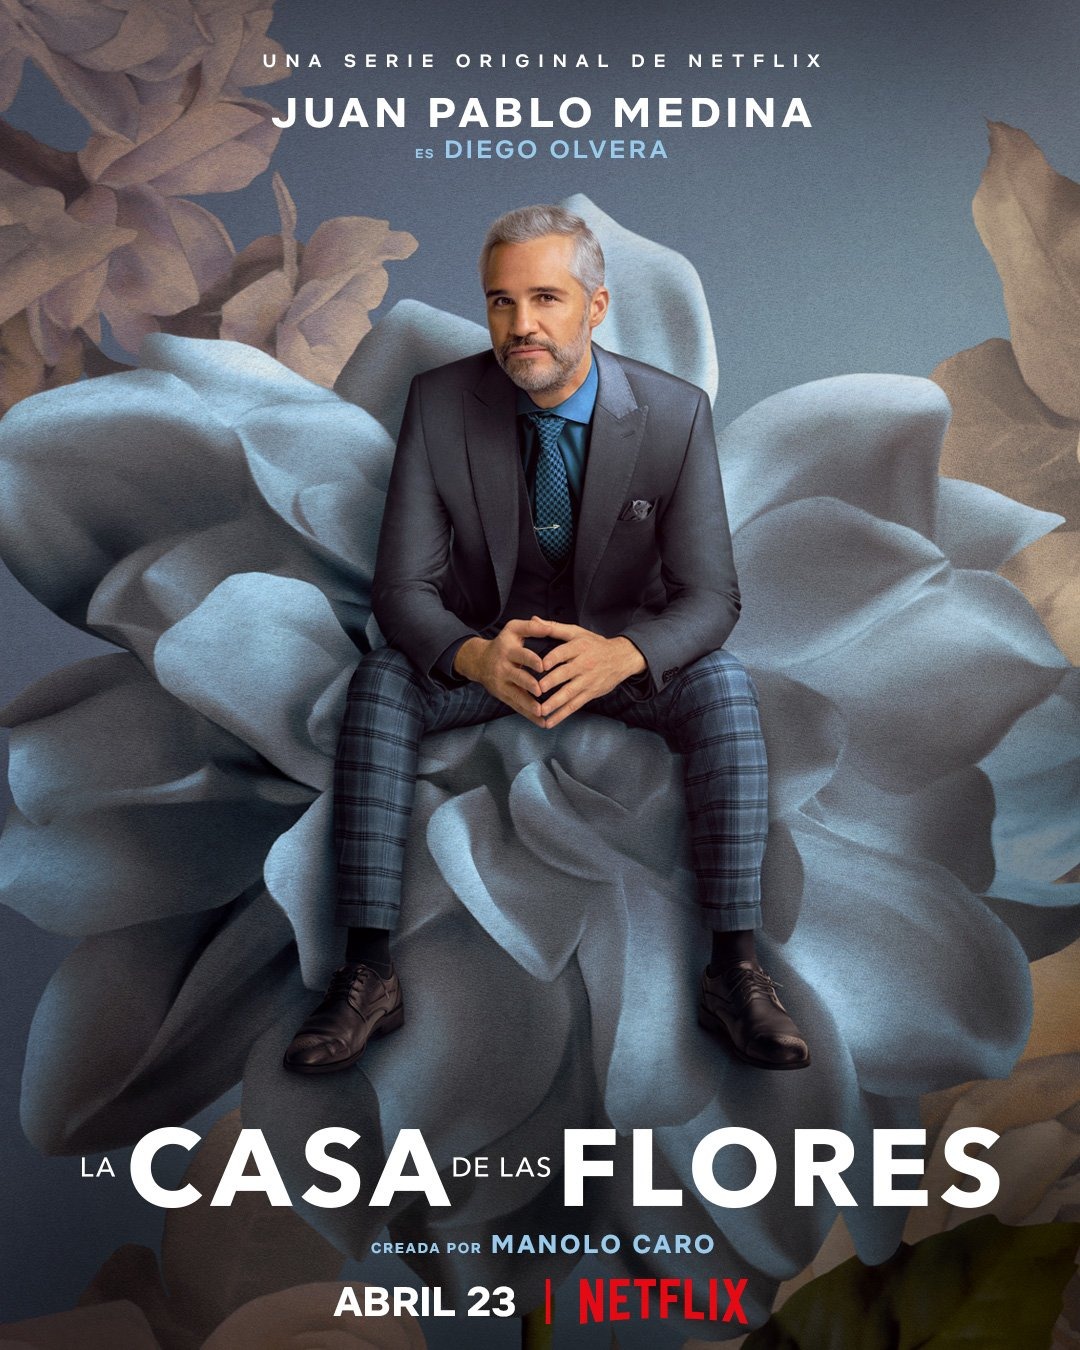 Extra Large TV Poster Image for La casa de las flores (#16 of 19)